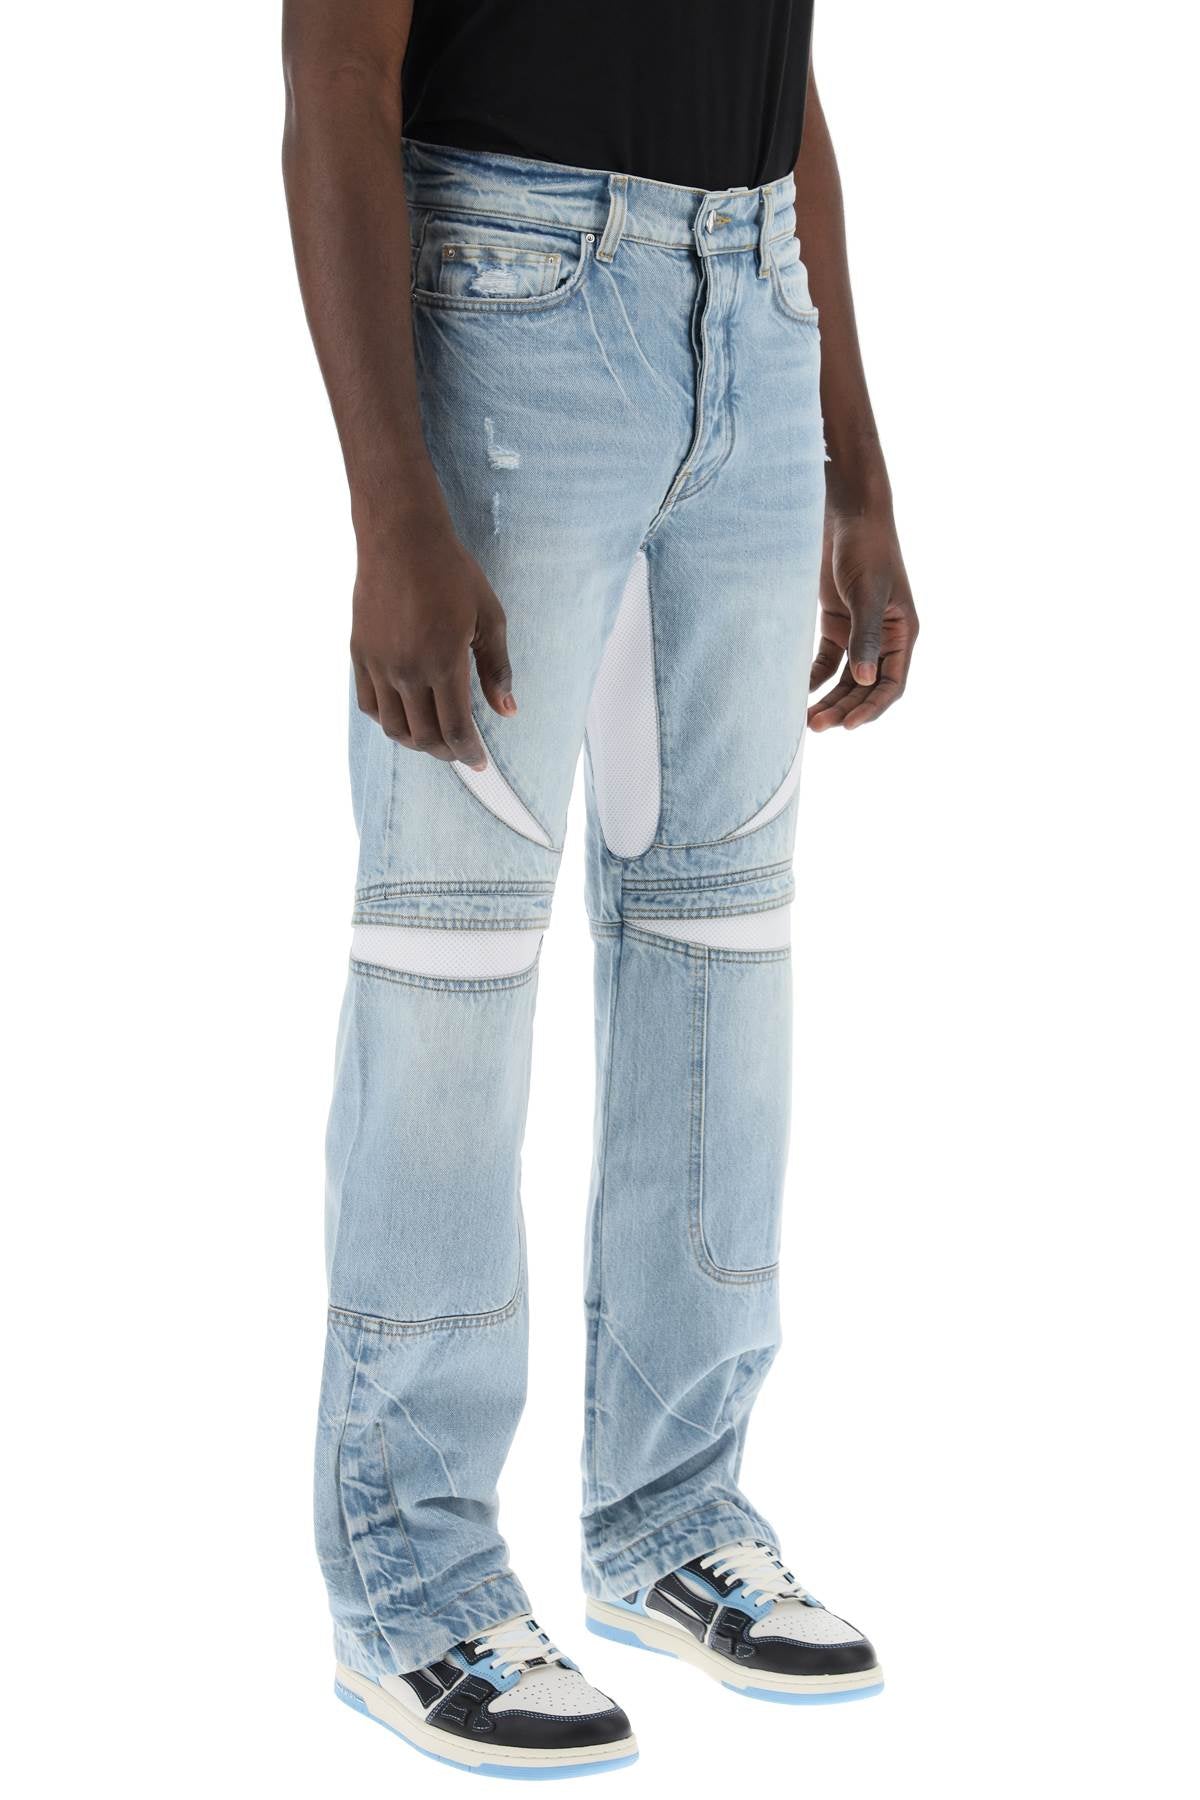 AMIRI Light Blue Straight Cut Mesh Insert Jeans for Men